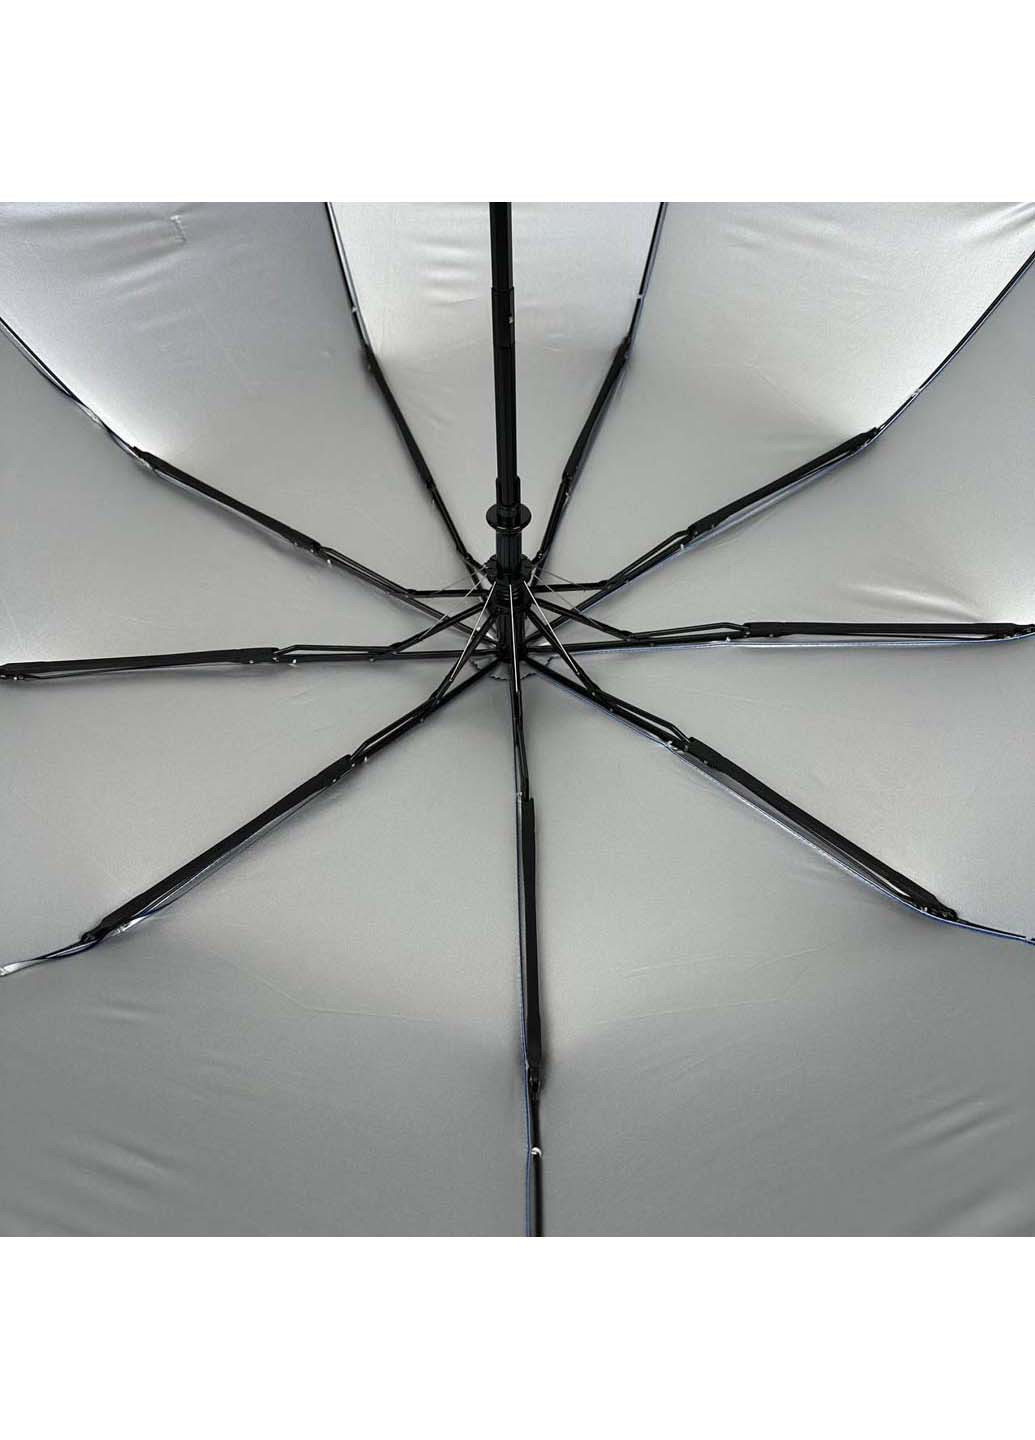 Складной зонт полуавтомат с абстрактным принтом Серебряный Дождь (265992132)